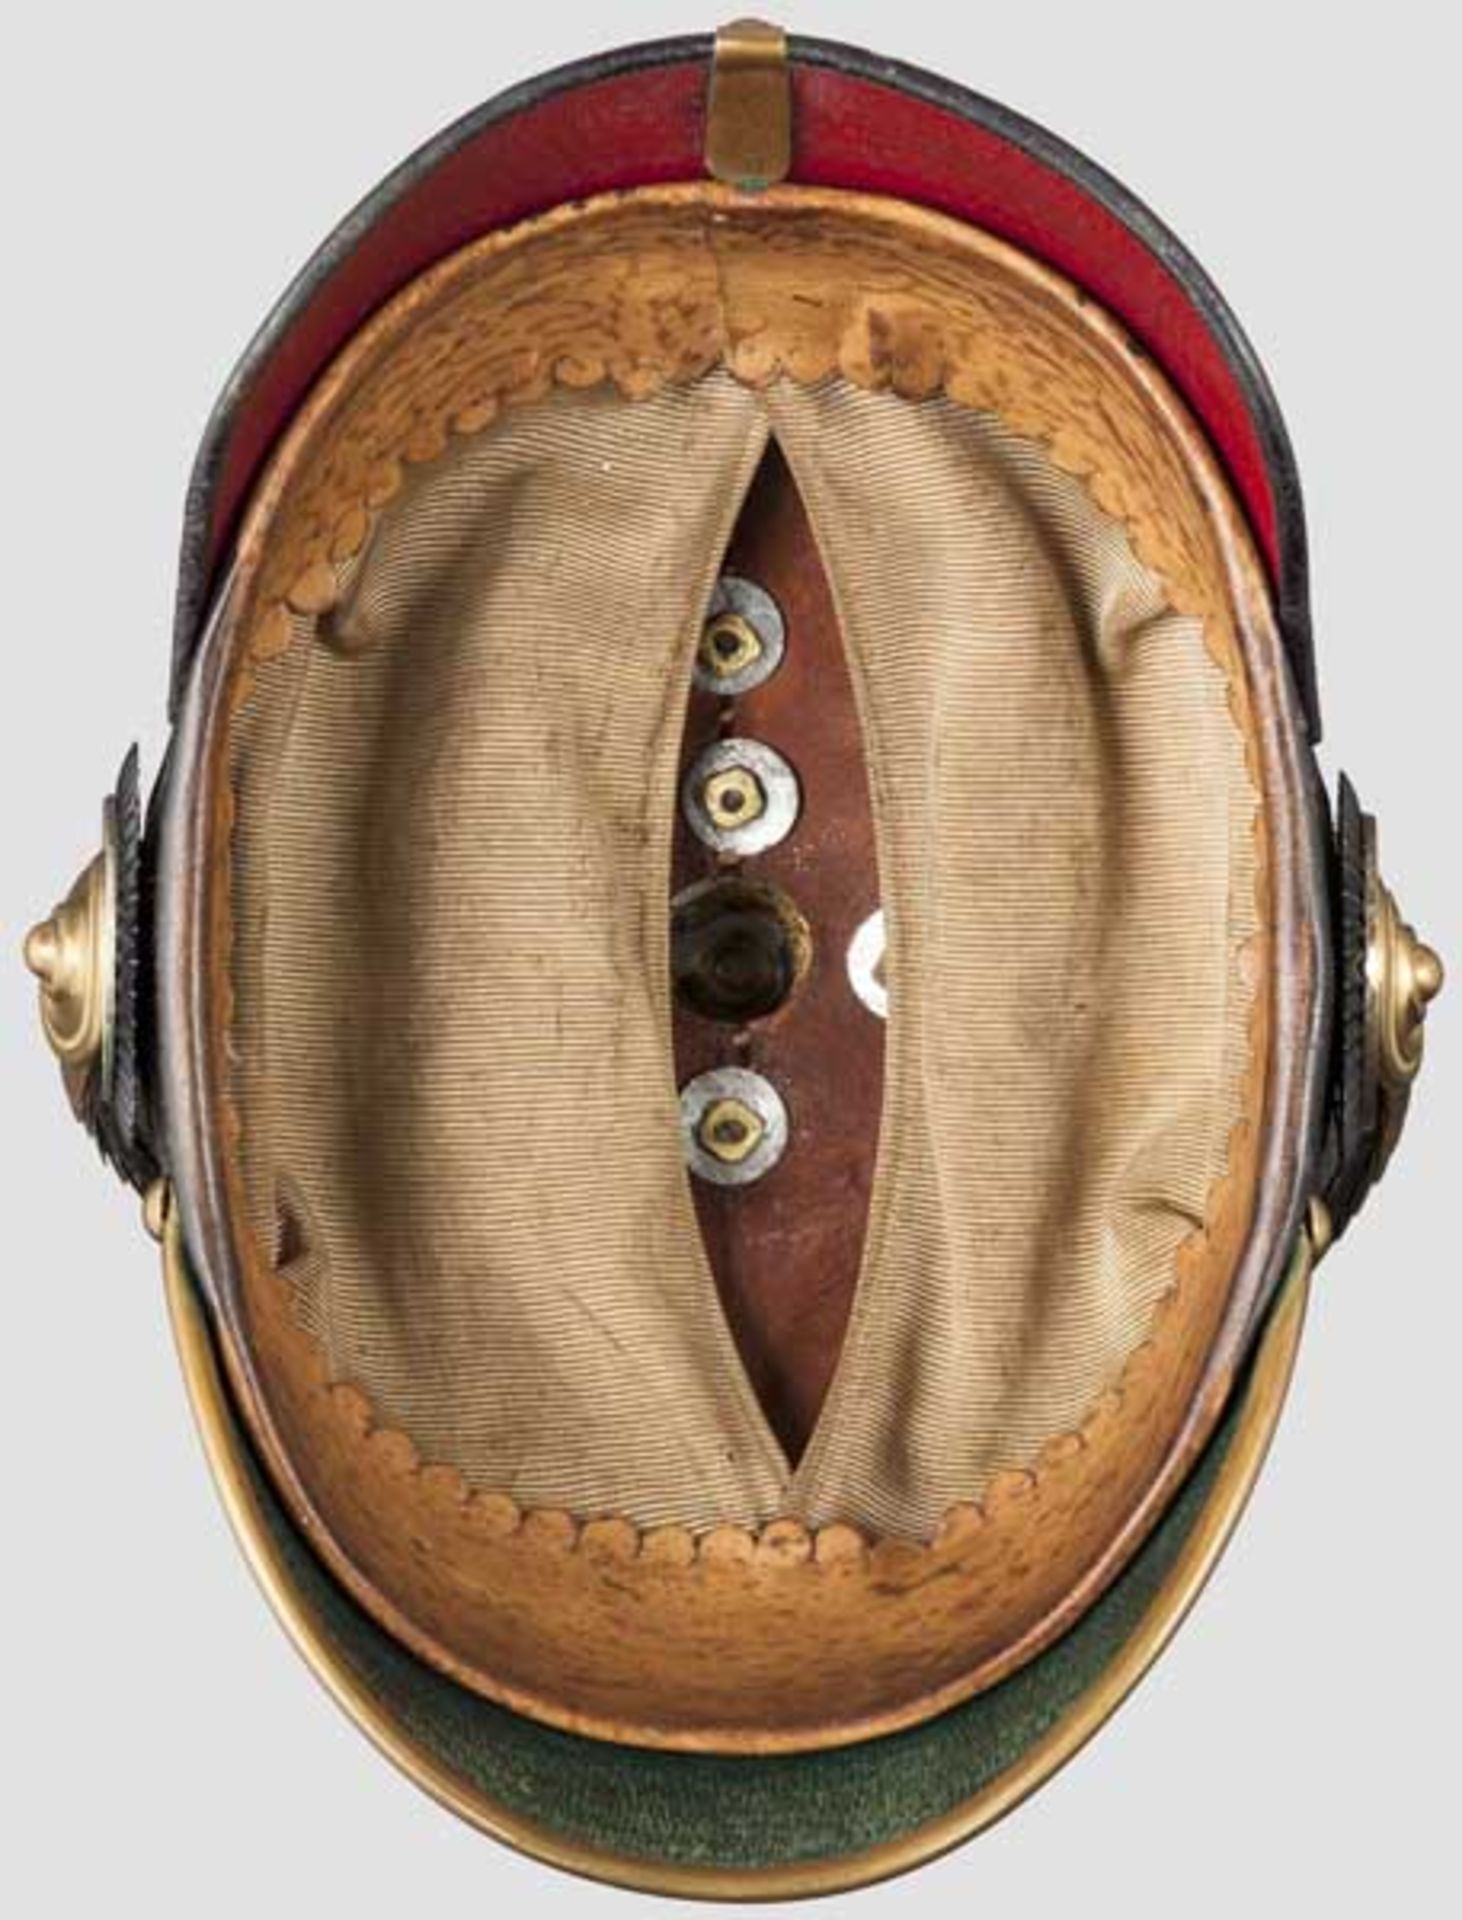 Helm für Offiziere der Artillerie, um 1900 Schwarz lackierte Lederglocke (minimal krakeliert) mit - Bild 3 aus 3